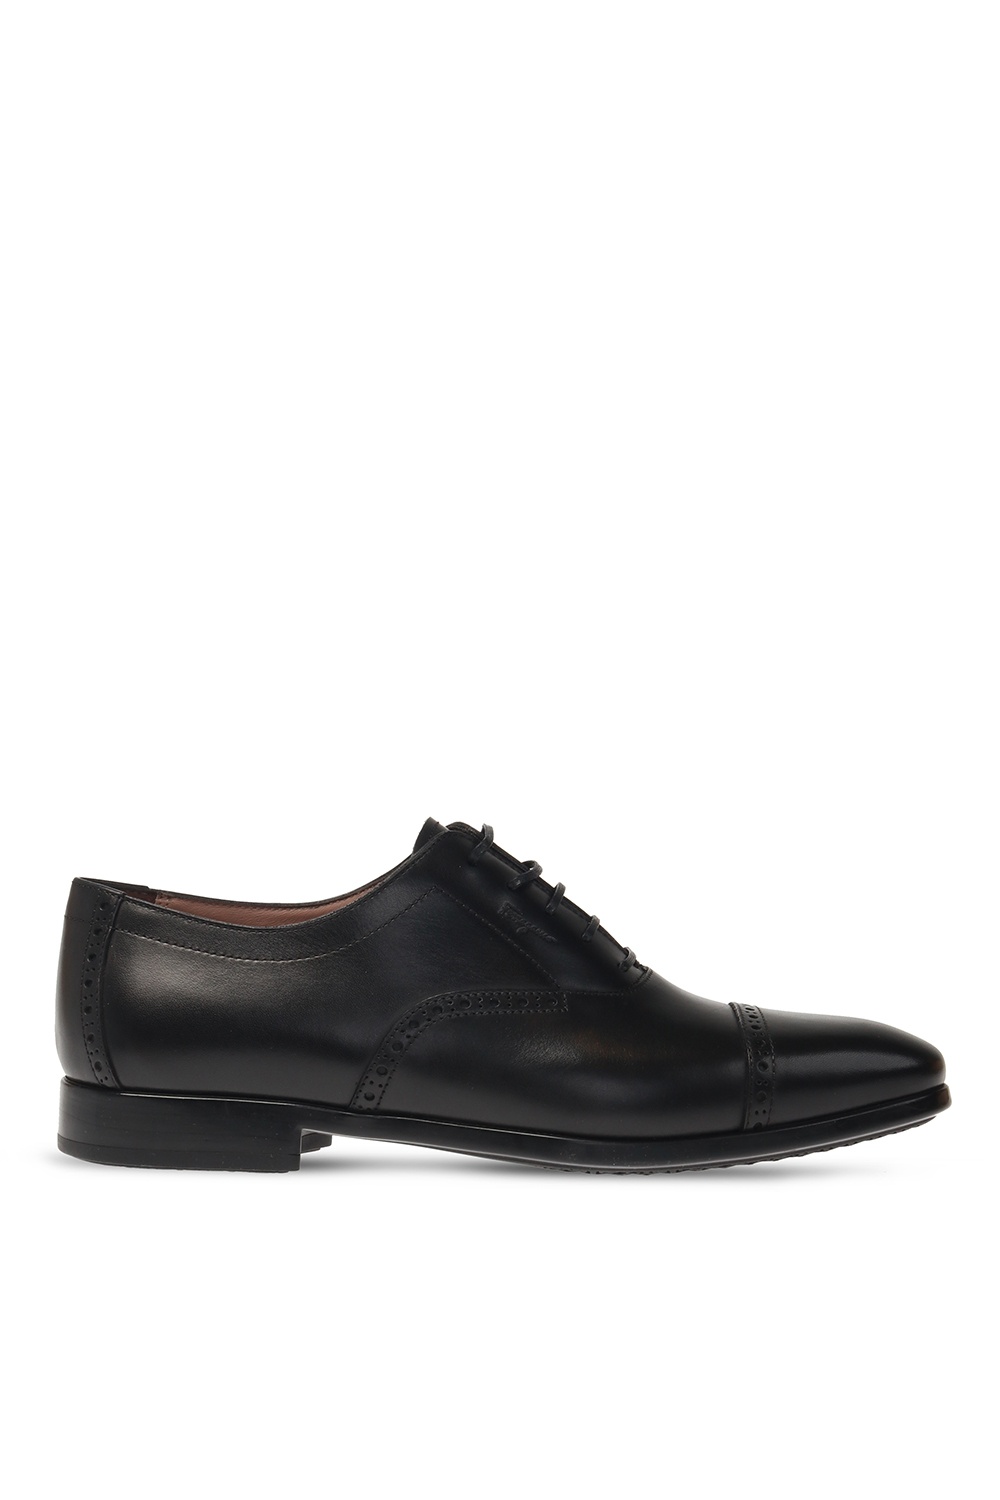 Salvatore Ferragamo ‘Riley’ leather shoes